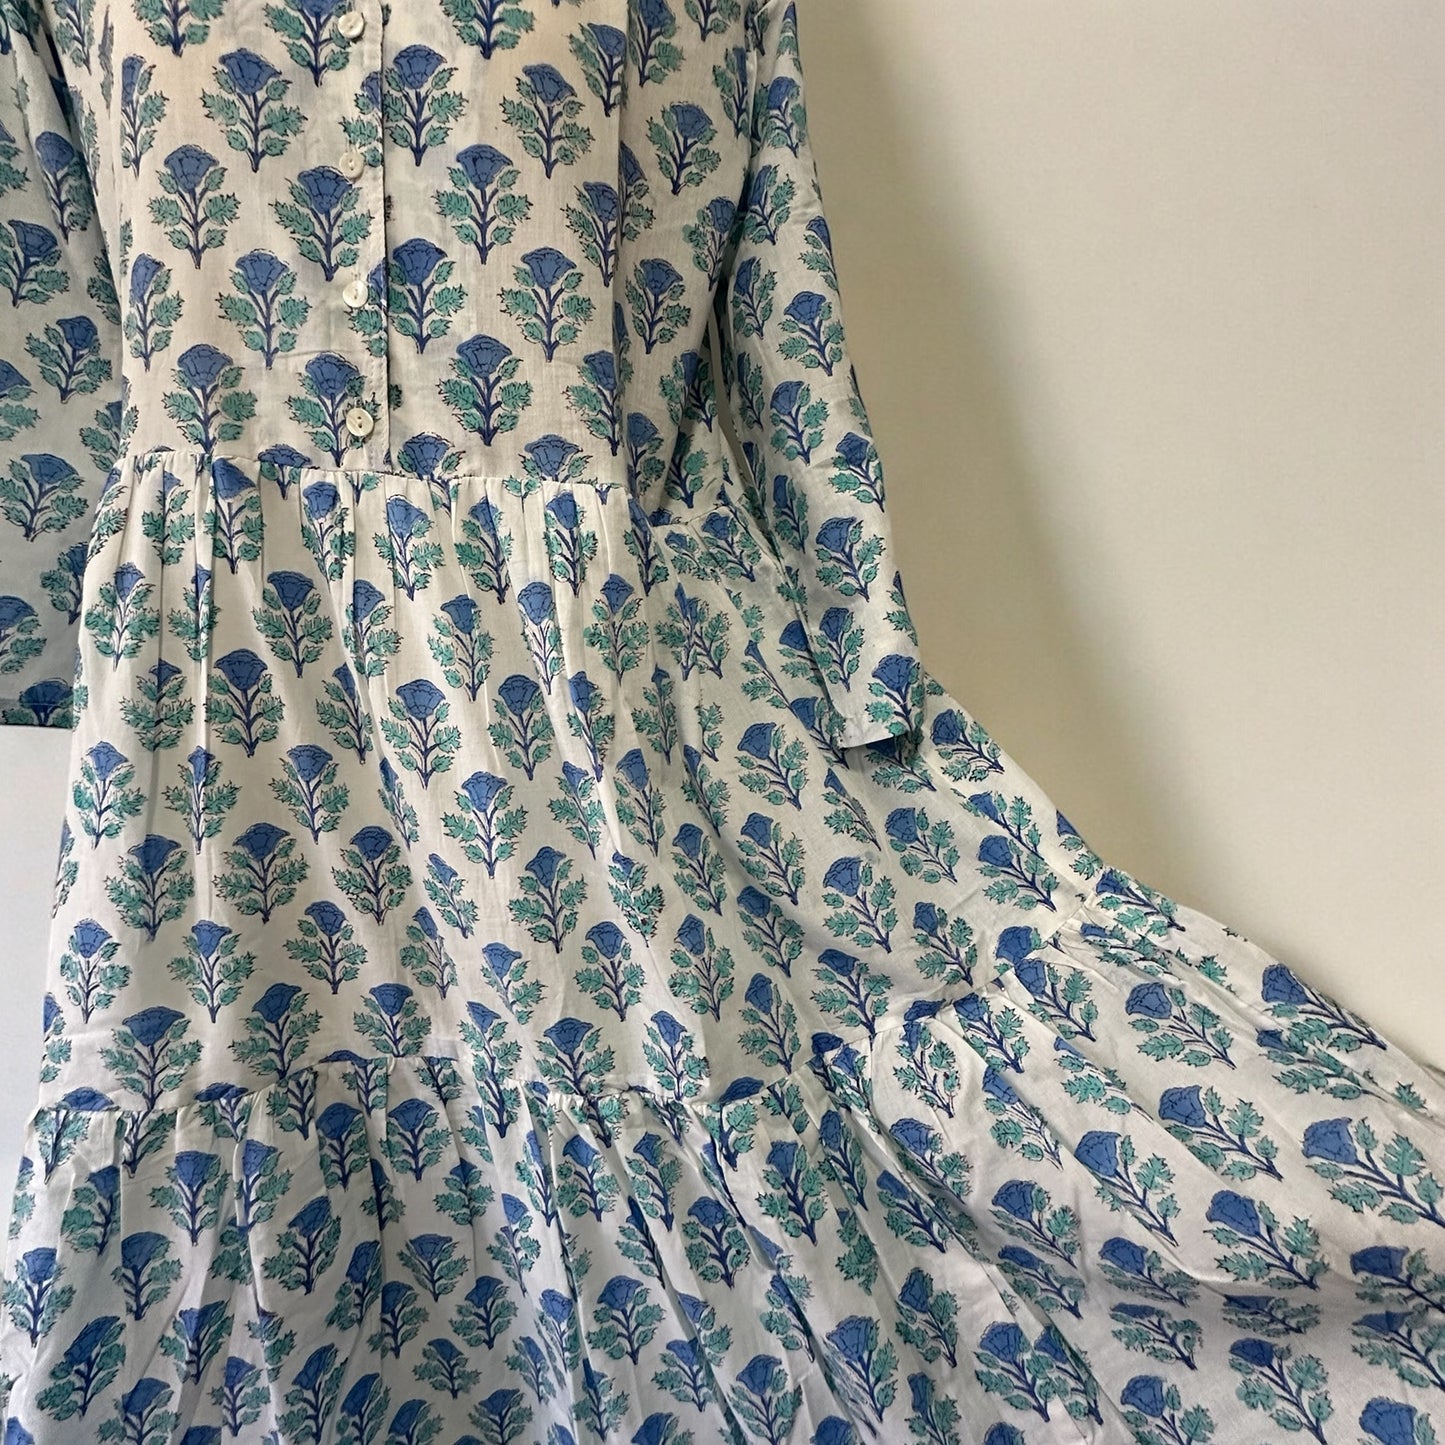 Design A / Quarter Sleeve Dress- 七部袖スリーブワンピース